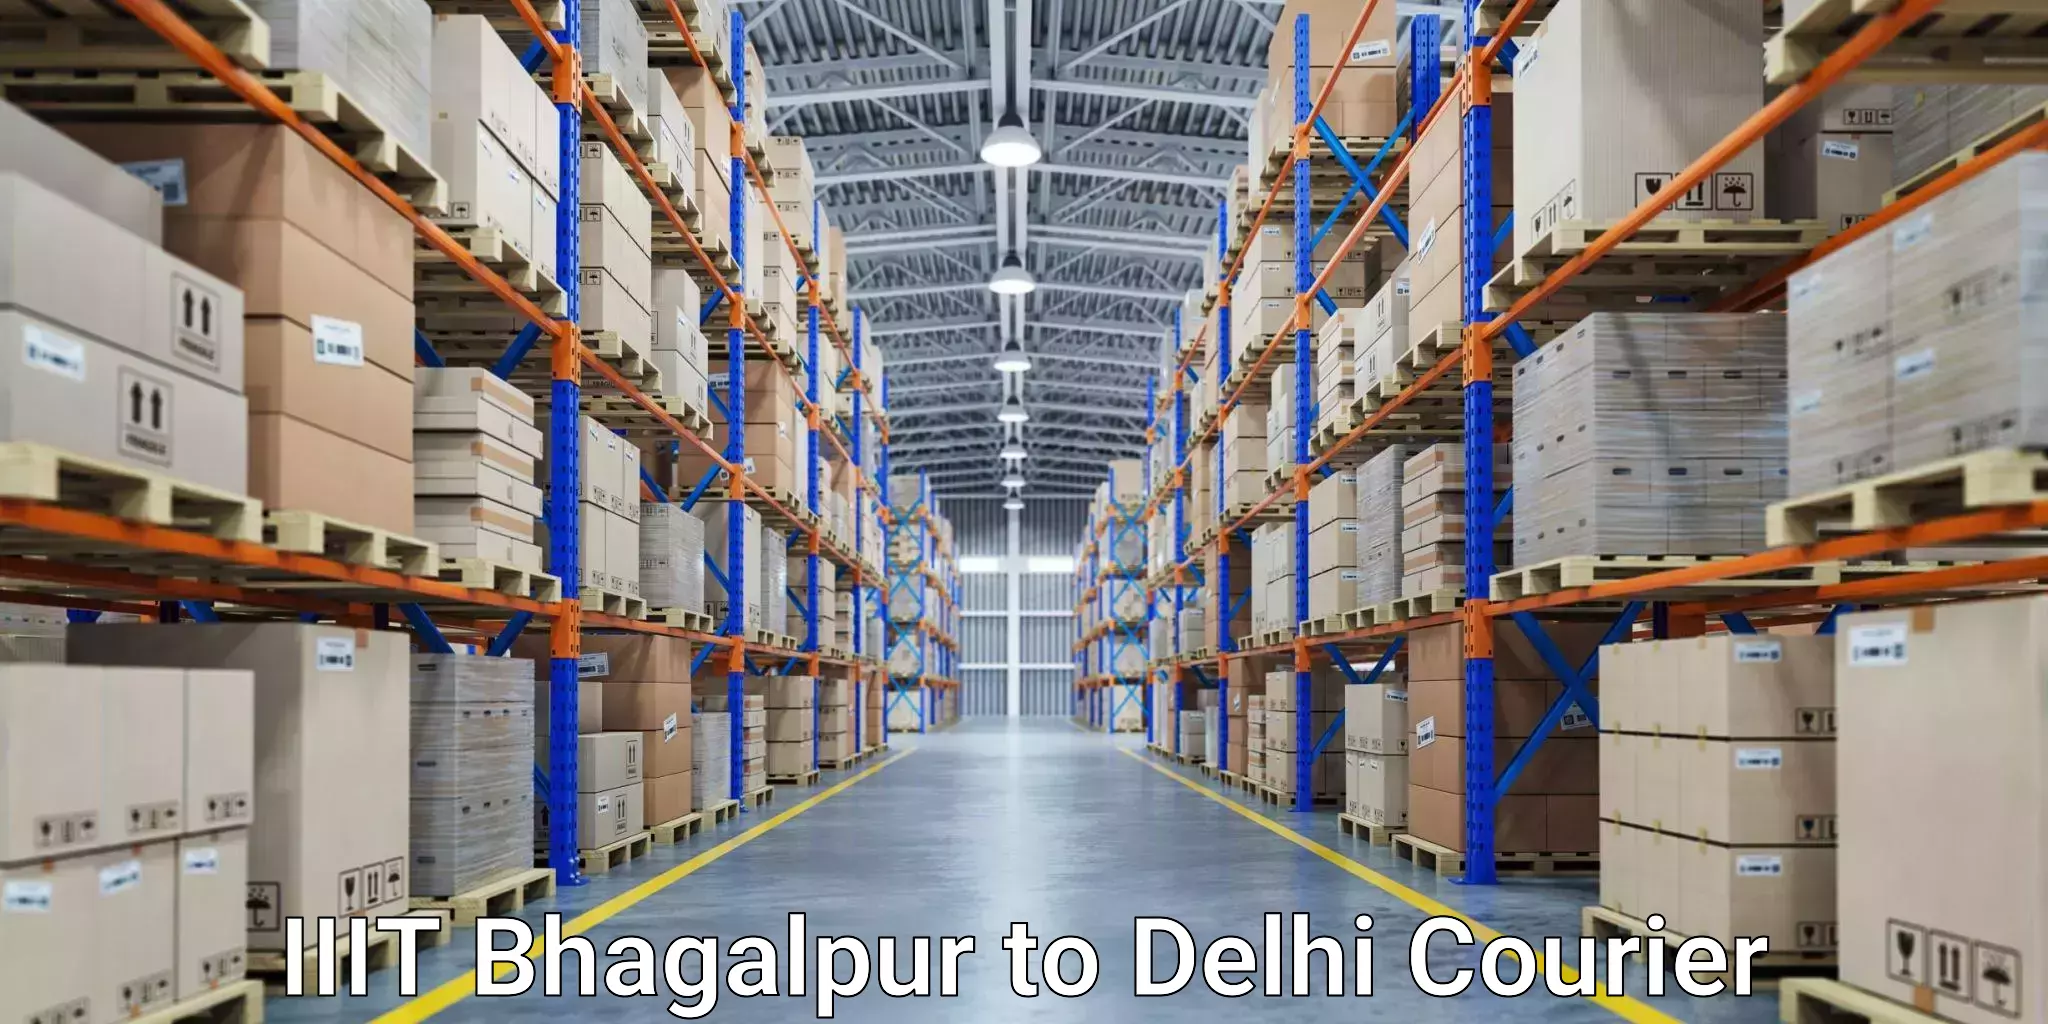 Express courier capabilities IIIT Bhagalpur to IIT Delhi